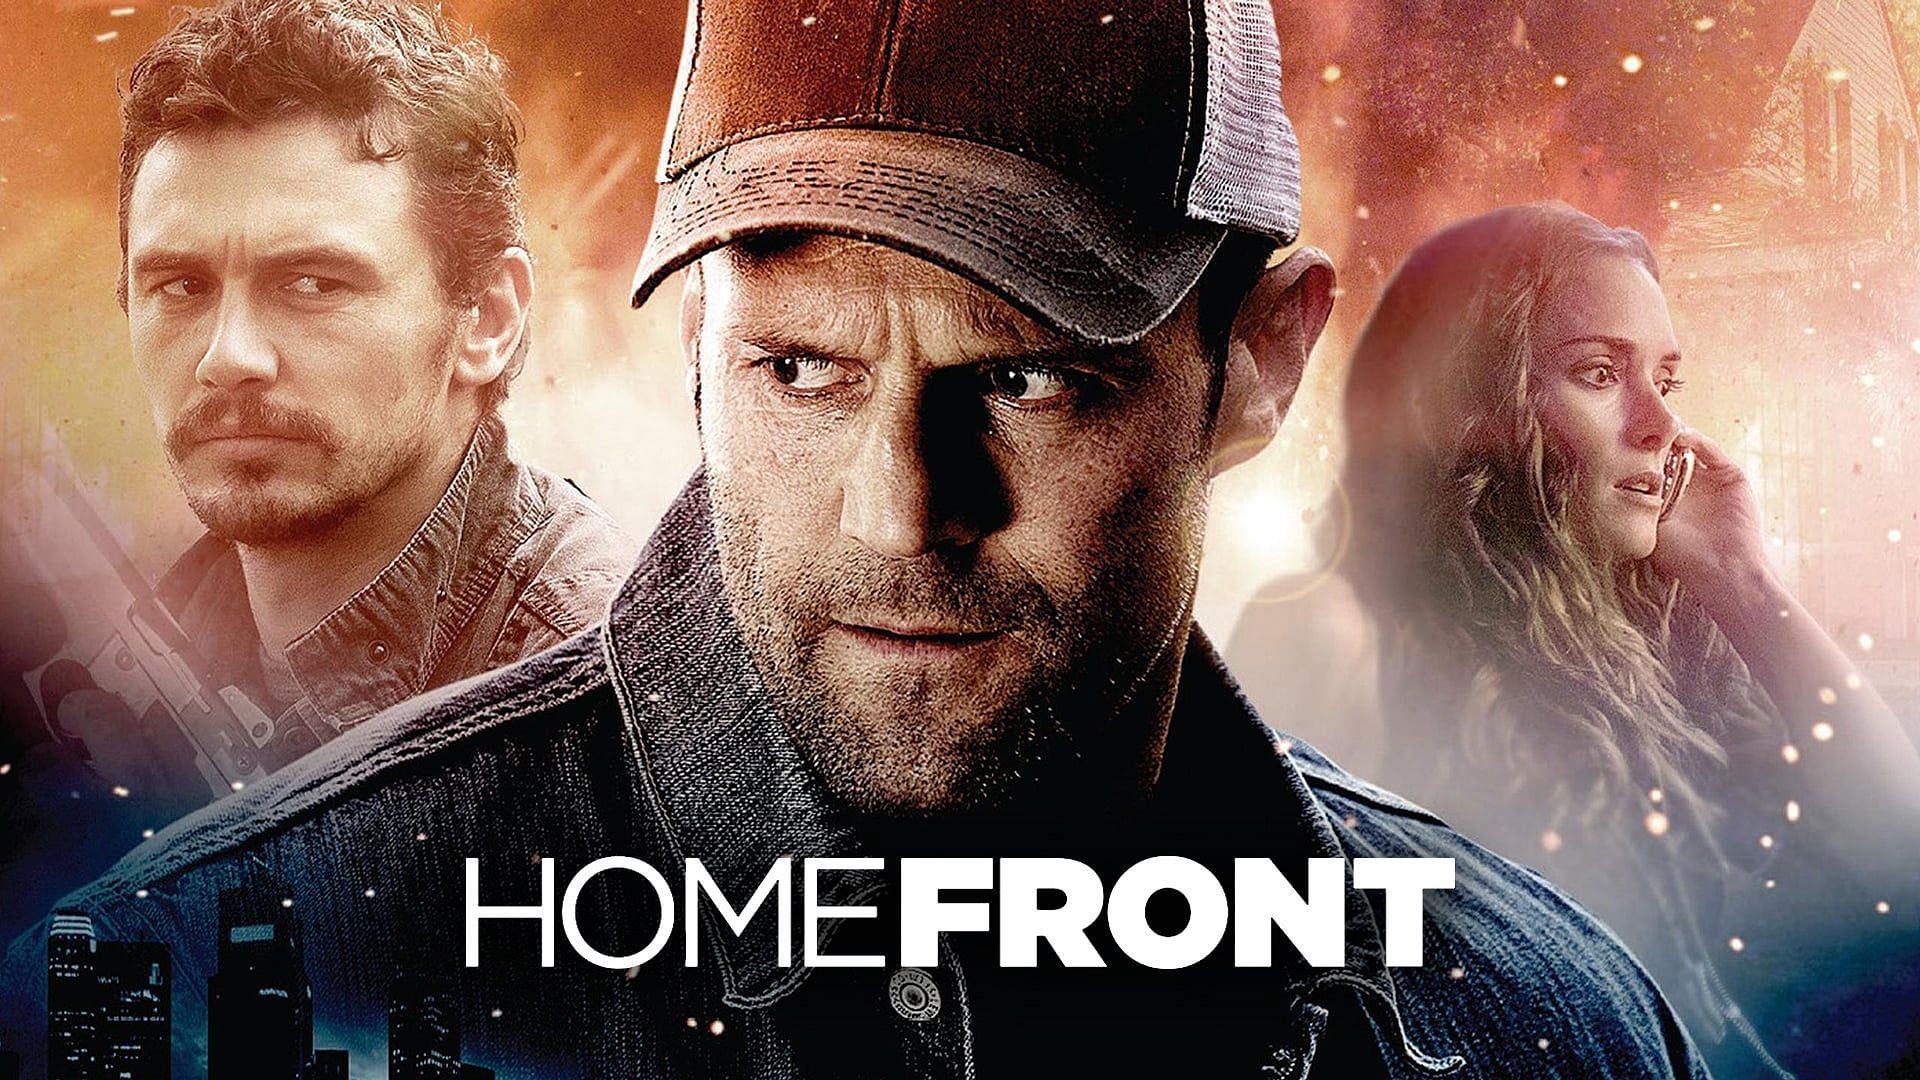 Homefront stars Jason Statham. (Image via Prime Video)